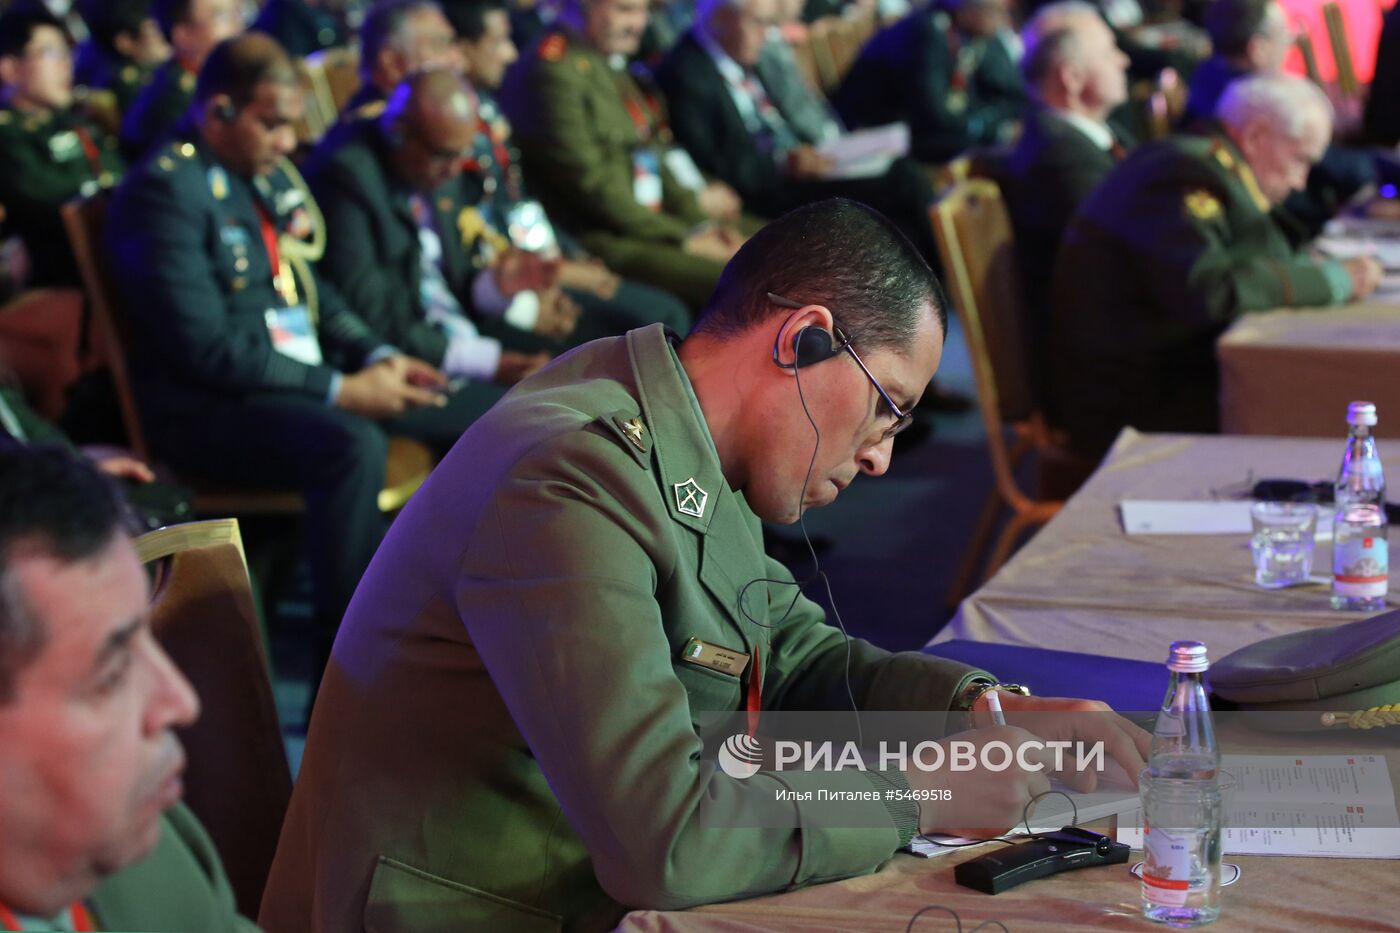 VII Московская конференция по международной безопасности. День второй